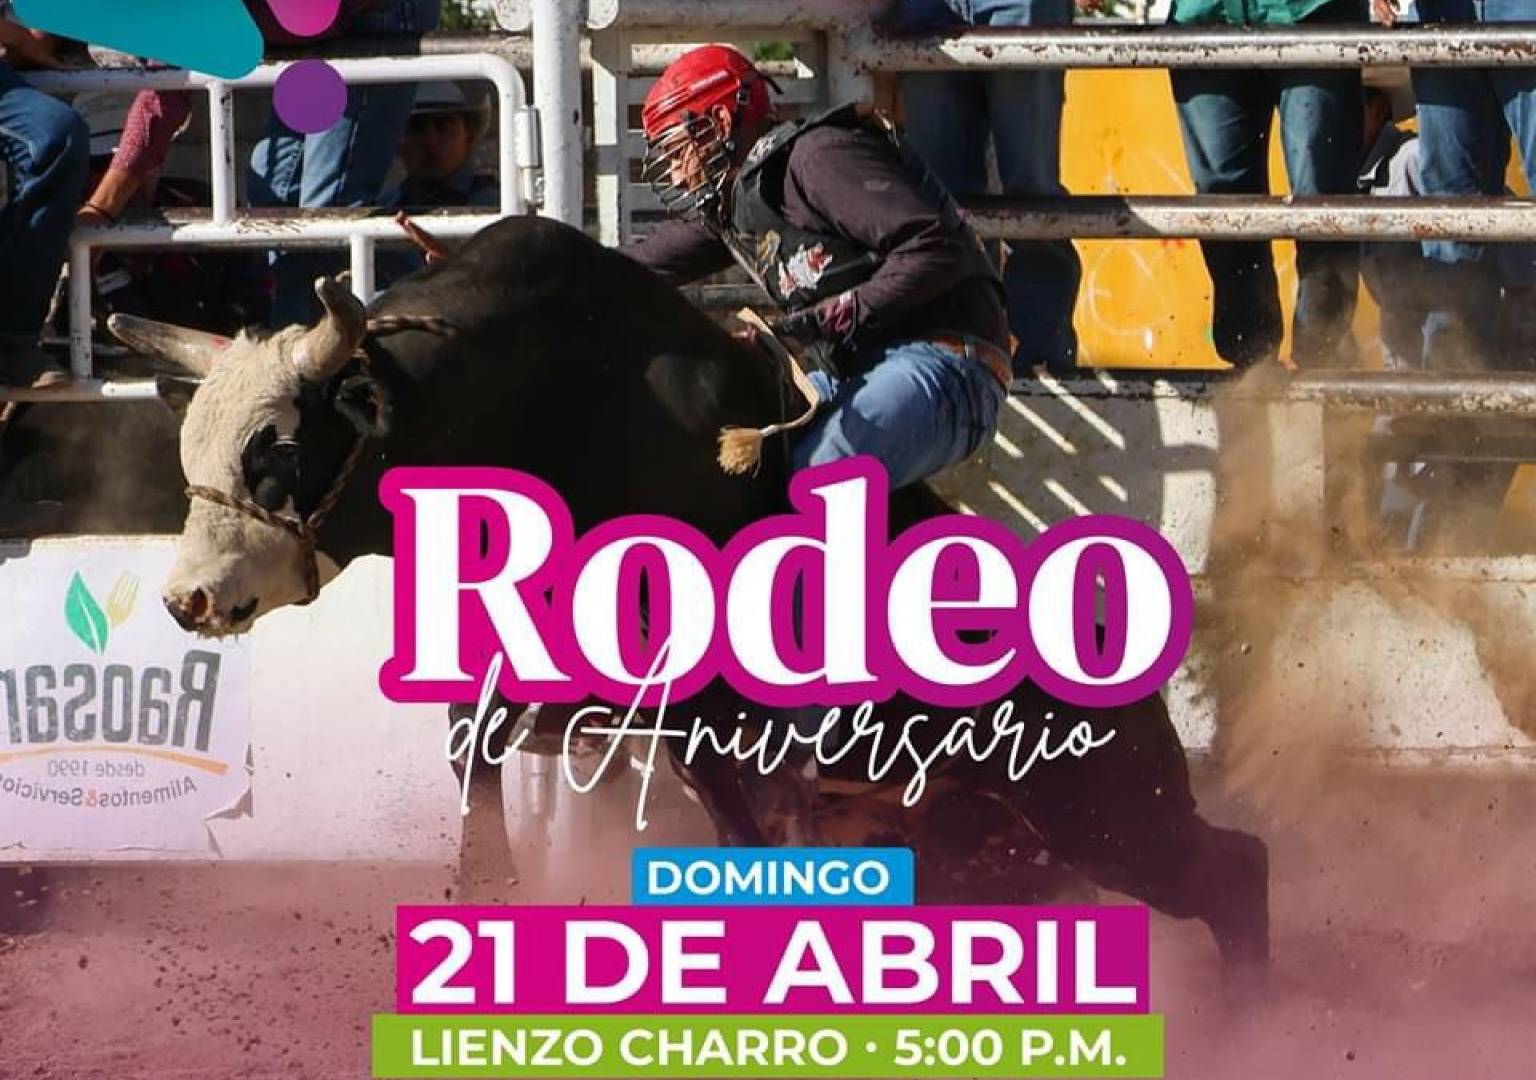 Invitan al Rodeo de Aniversario esta tarde de domingo en el Lienzo Charro  